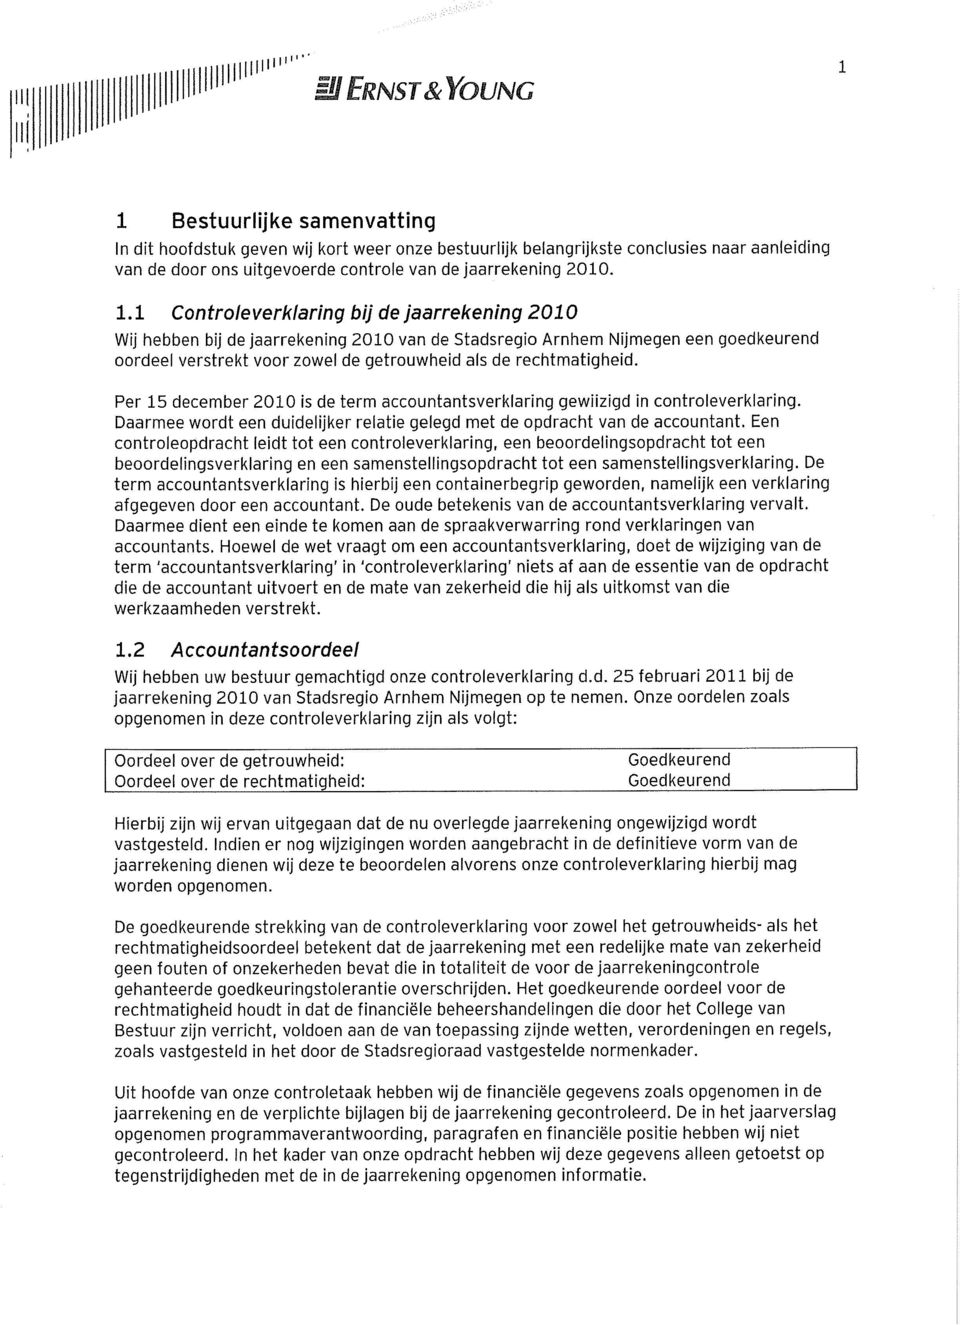 1 Controleverklaring bij de jaarrekening 2010 Wij hebben bij de jaarrekening 2010 van de Stadsregio Arnhem Nijmegen een goedkeurend oordeel verstrekt voor zowel de getrouwheid als de rechtmatigheid.